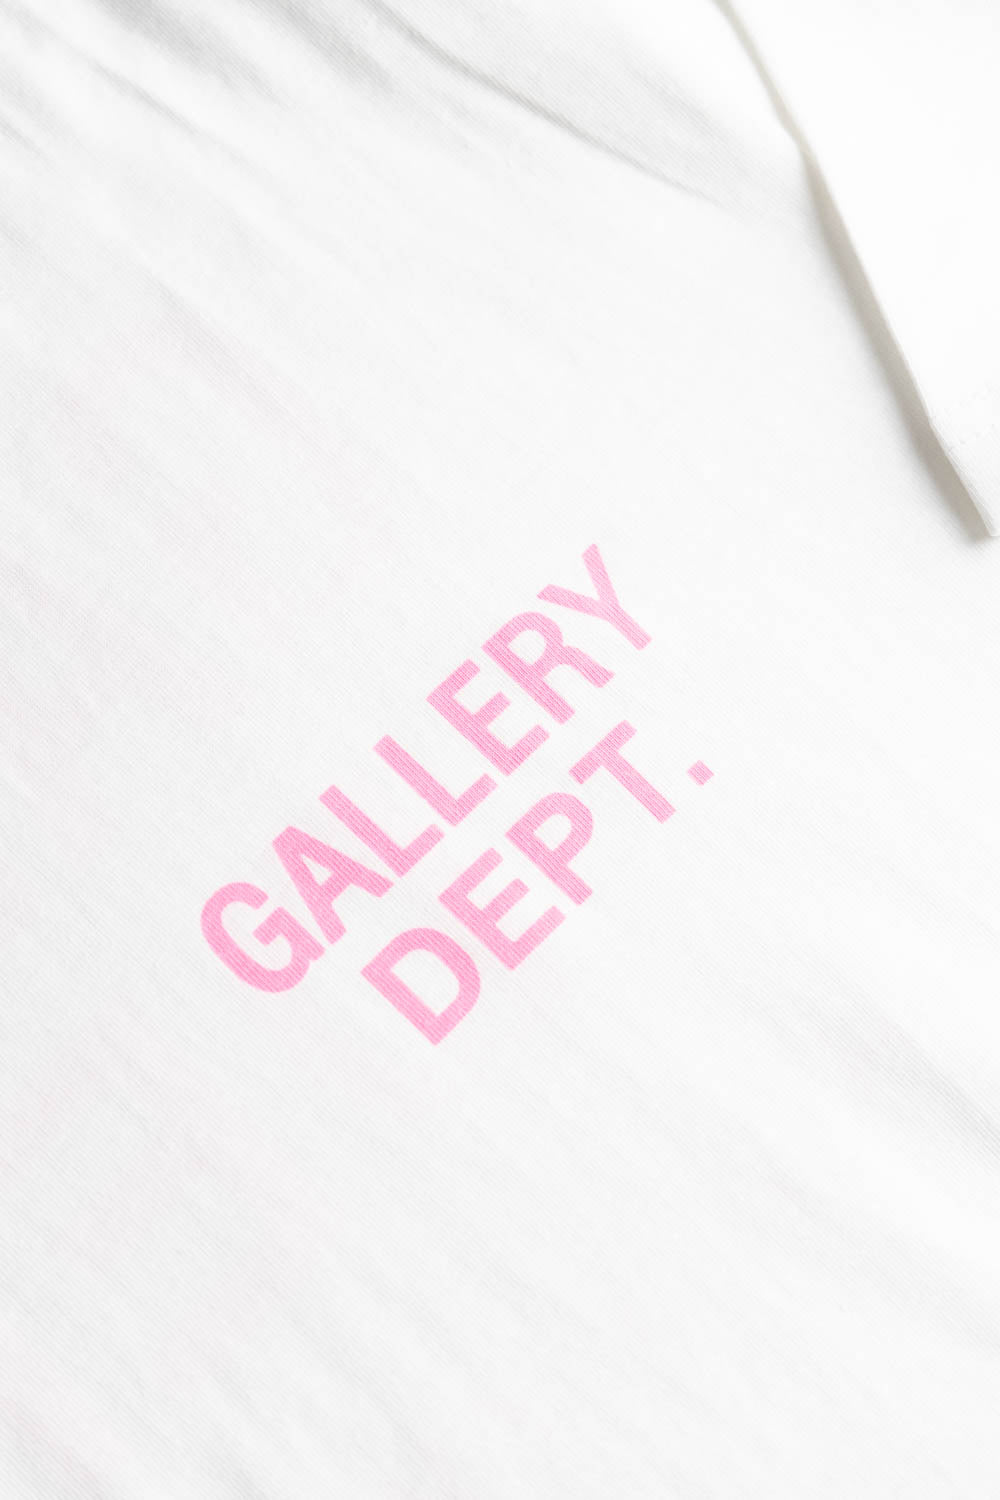 Gallery Dept. Logo Print T-Shirt White/Pink